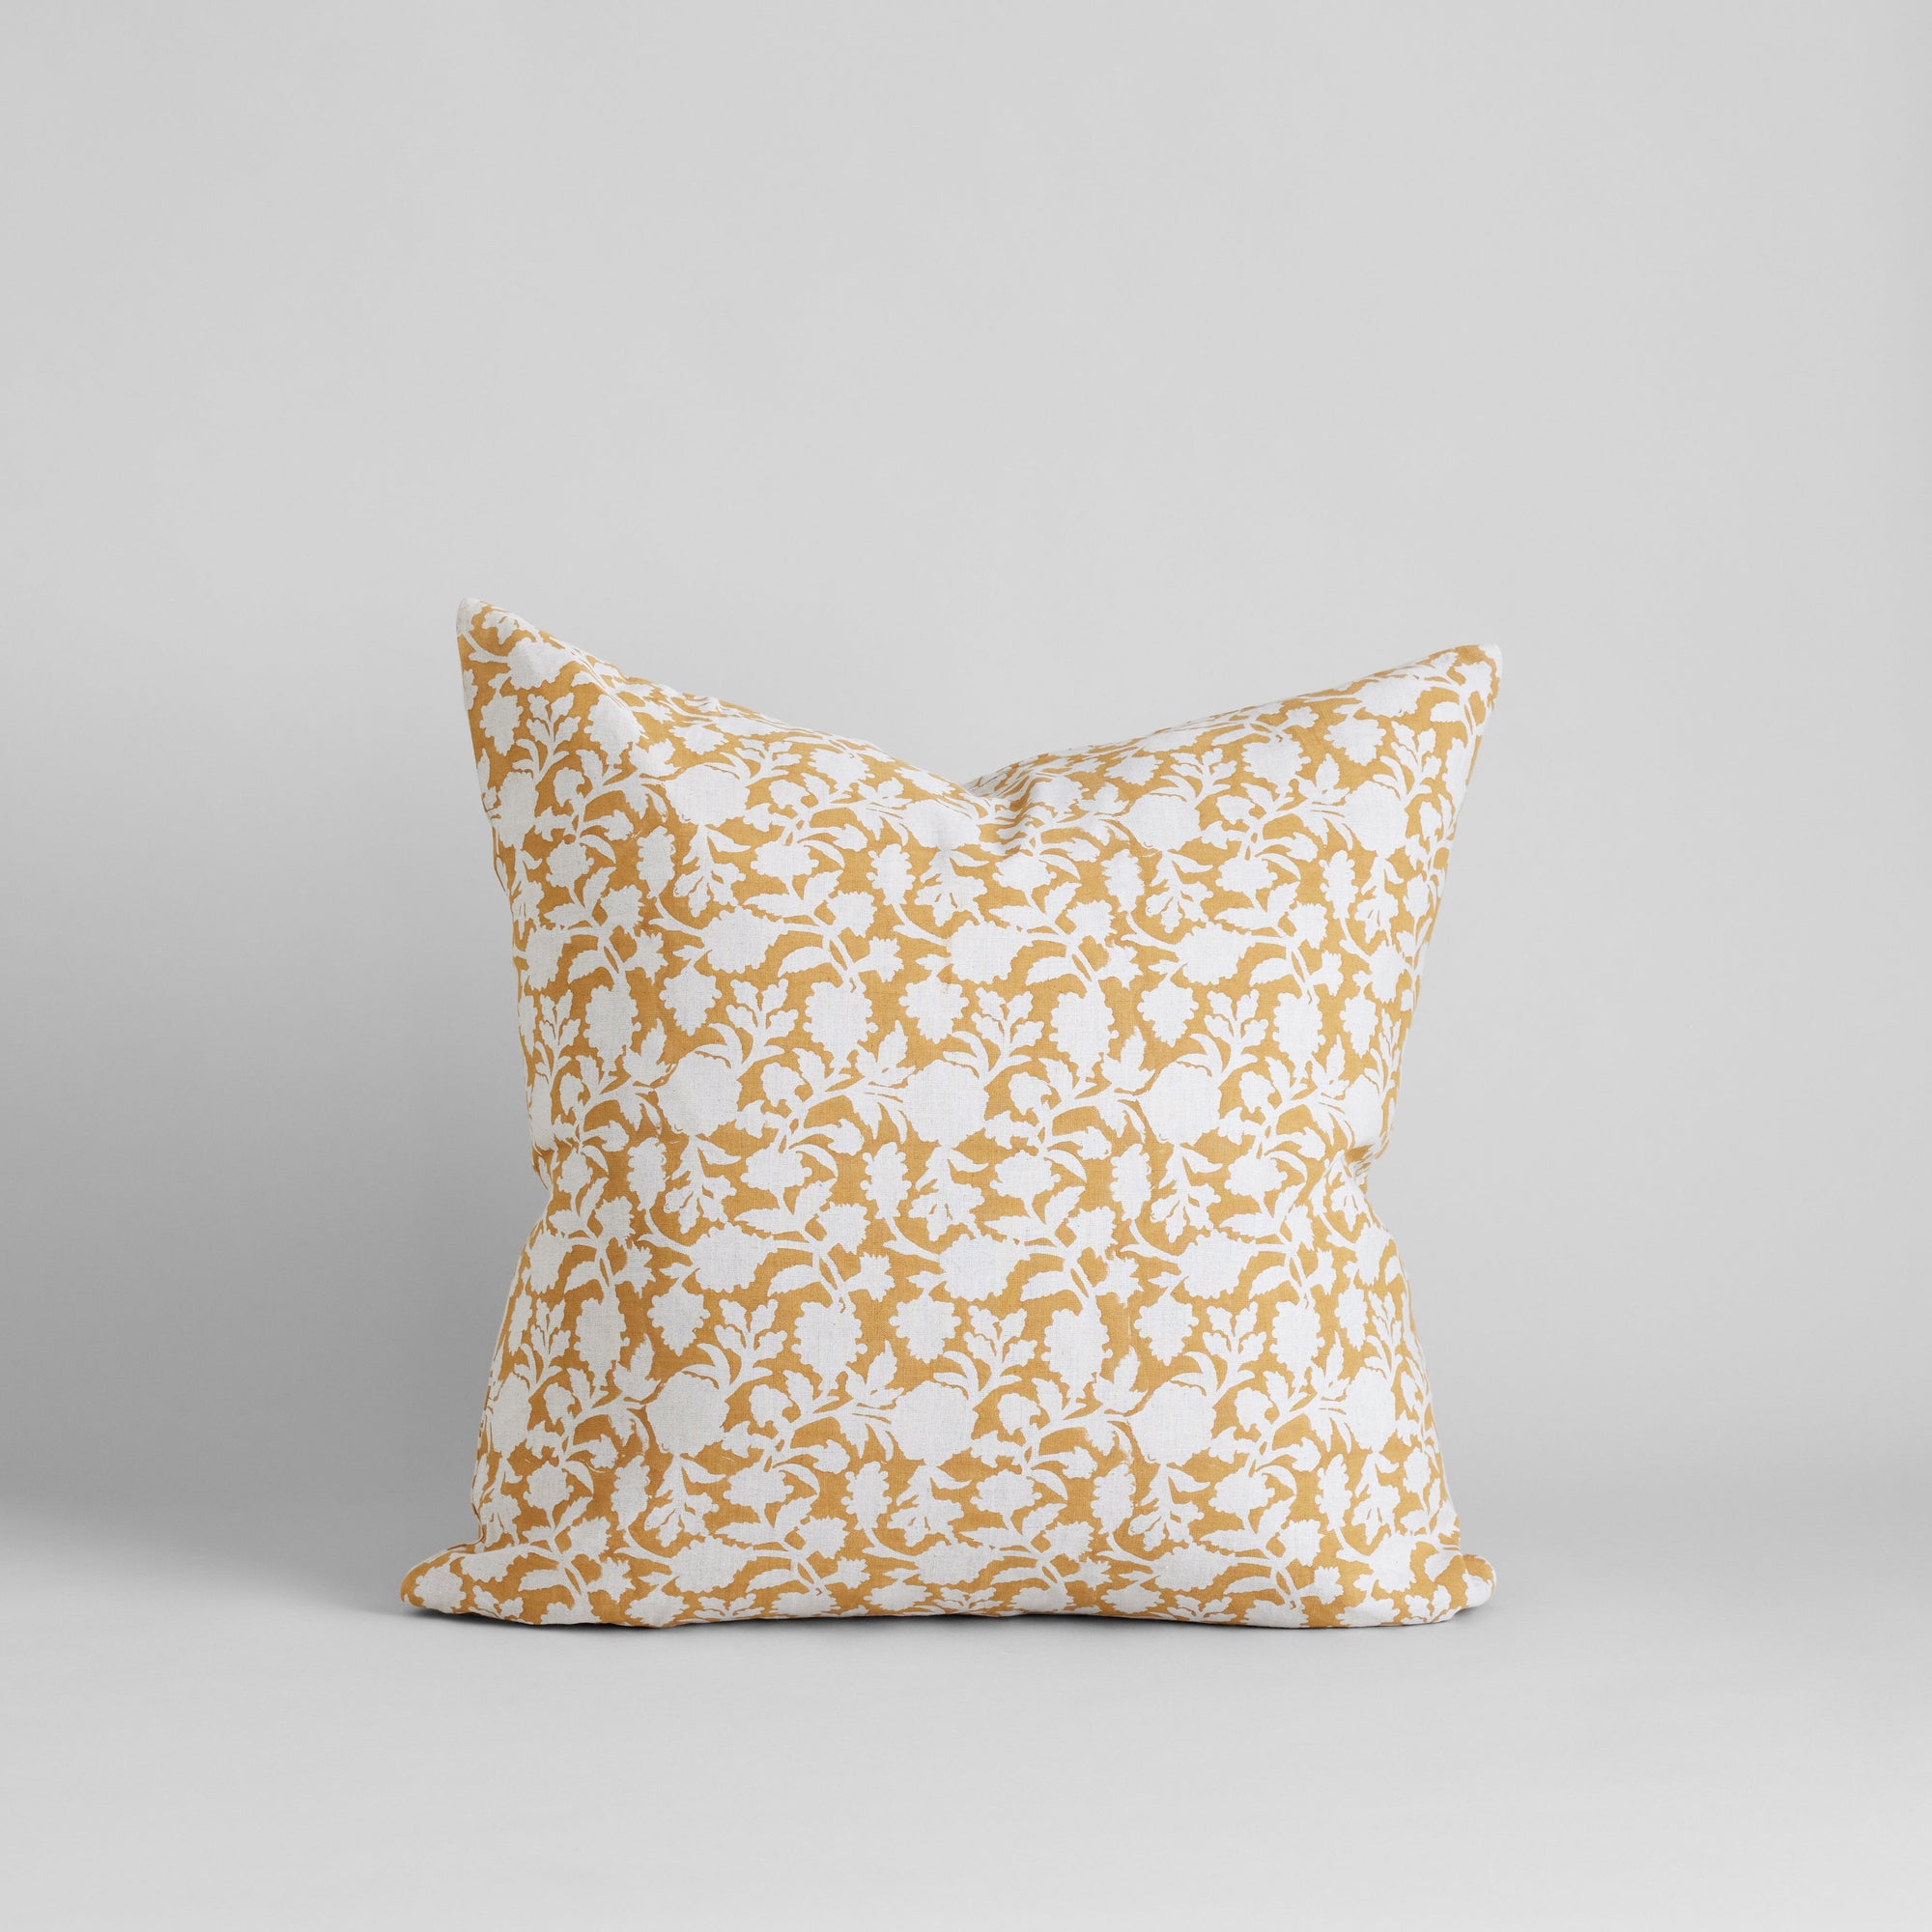 Tina Hand Block Printed Linen Pillow Cover, 22x22